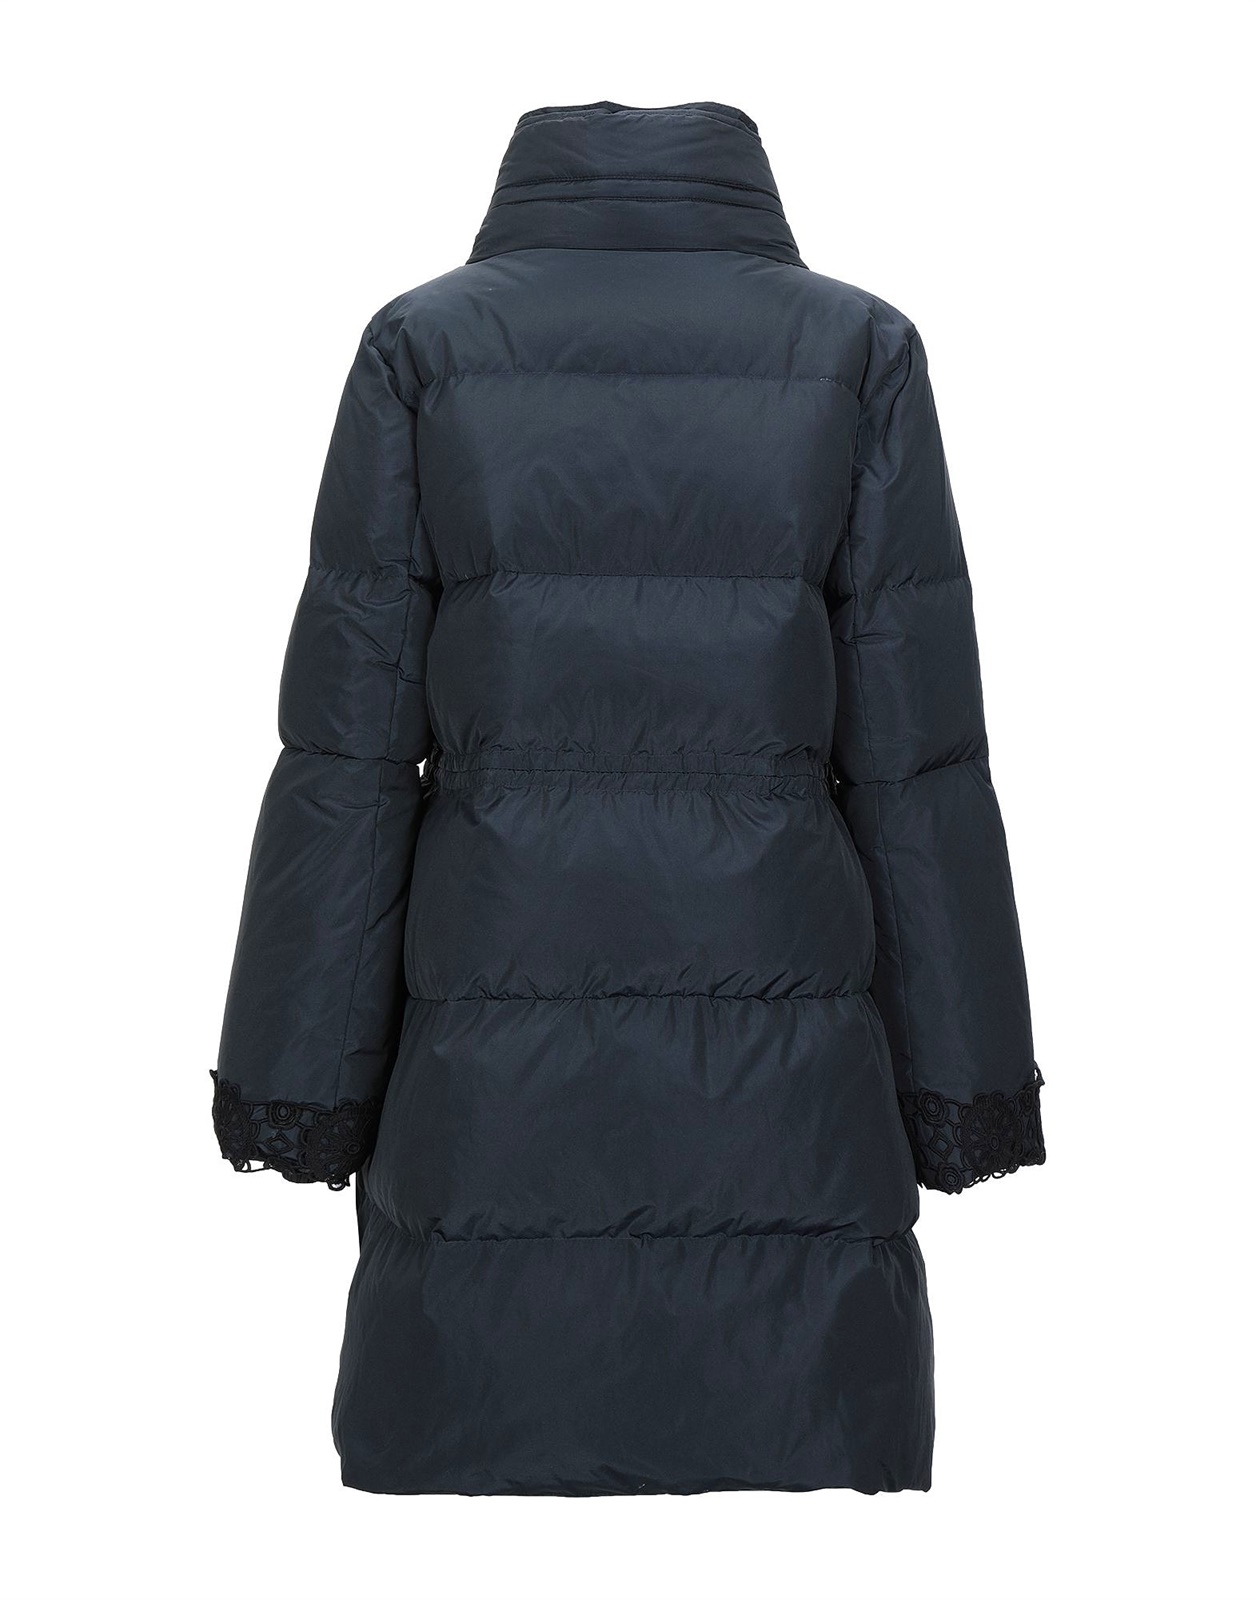 Women's Long sleeve winter down coat FO20-0227 - Puffer Jacket - Custom ...